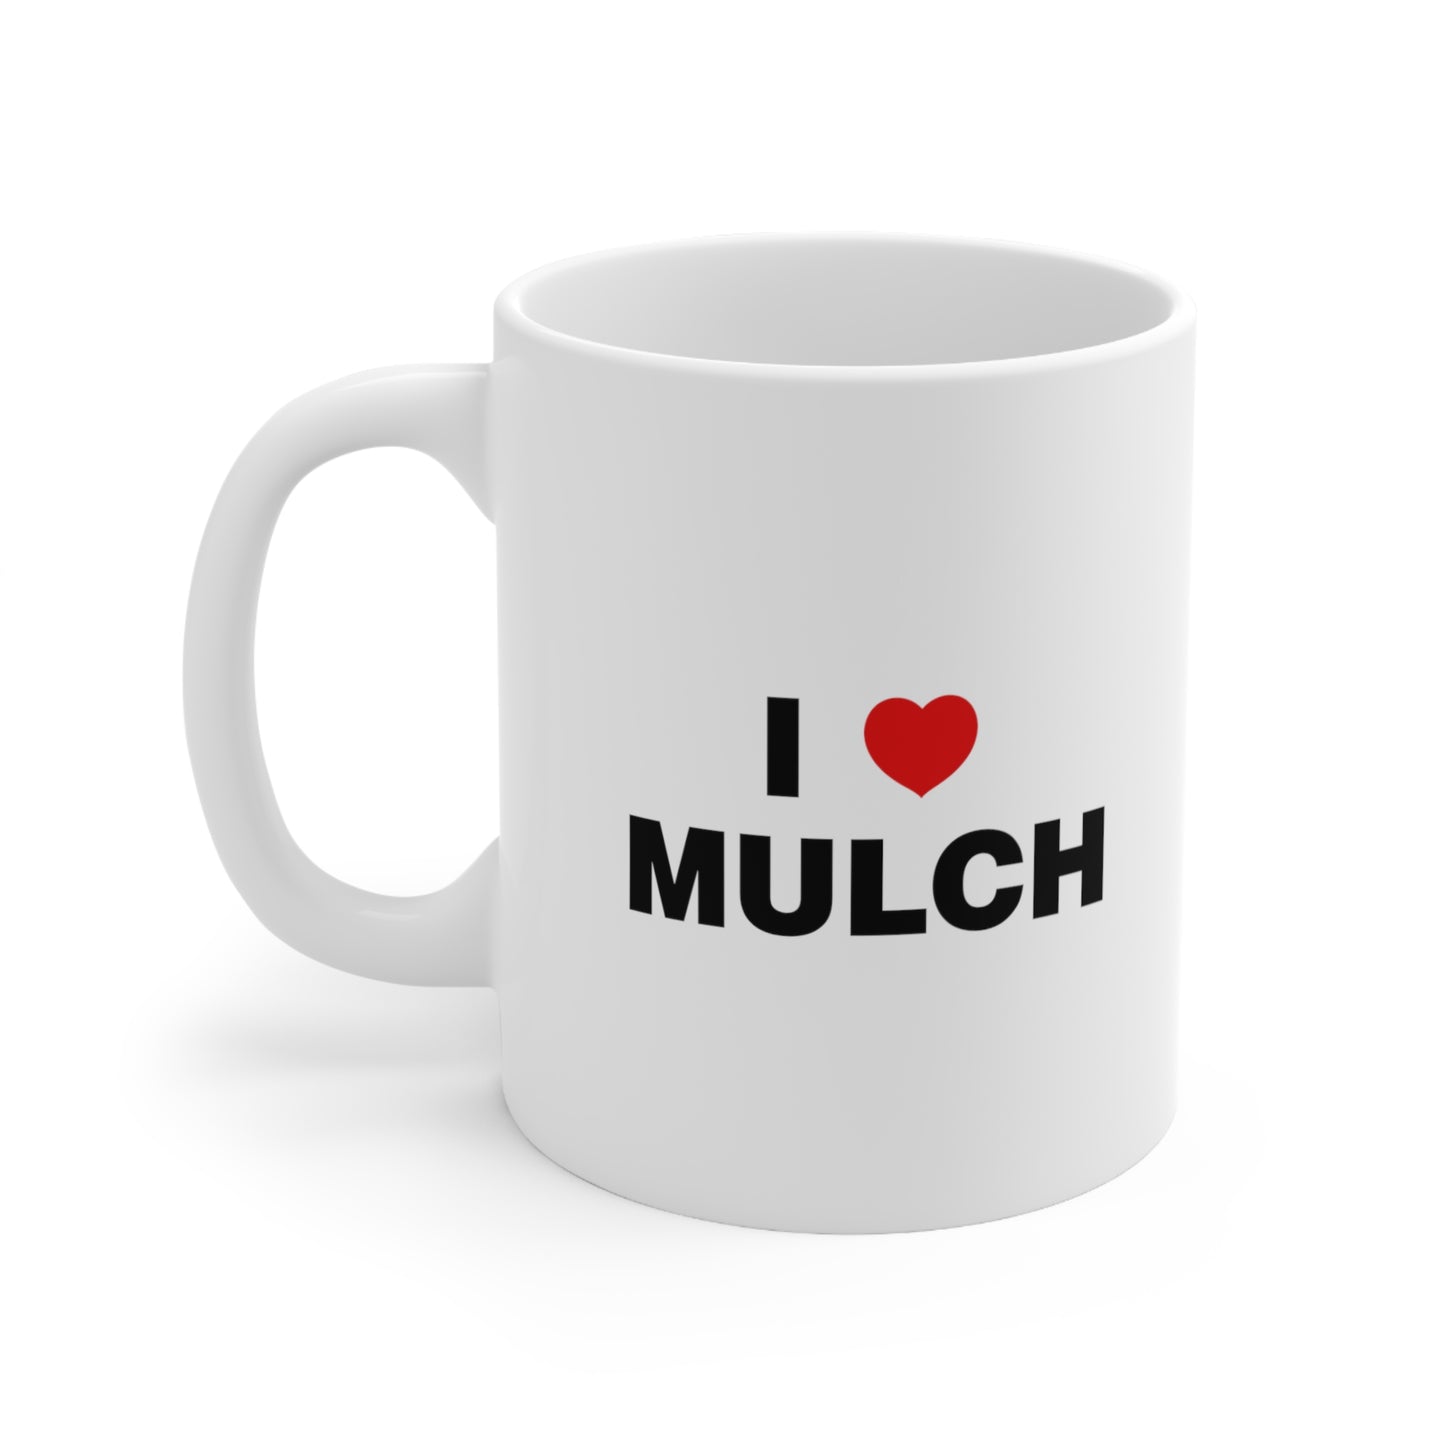 I Love Mulch Coffee Mug 